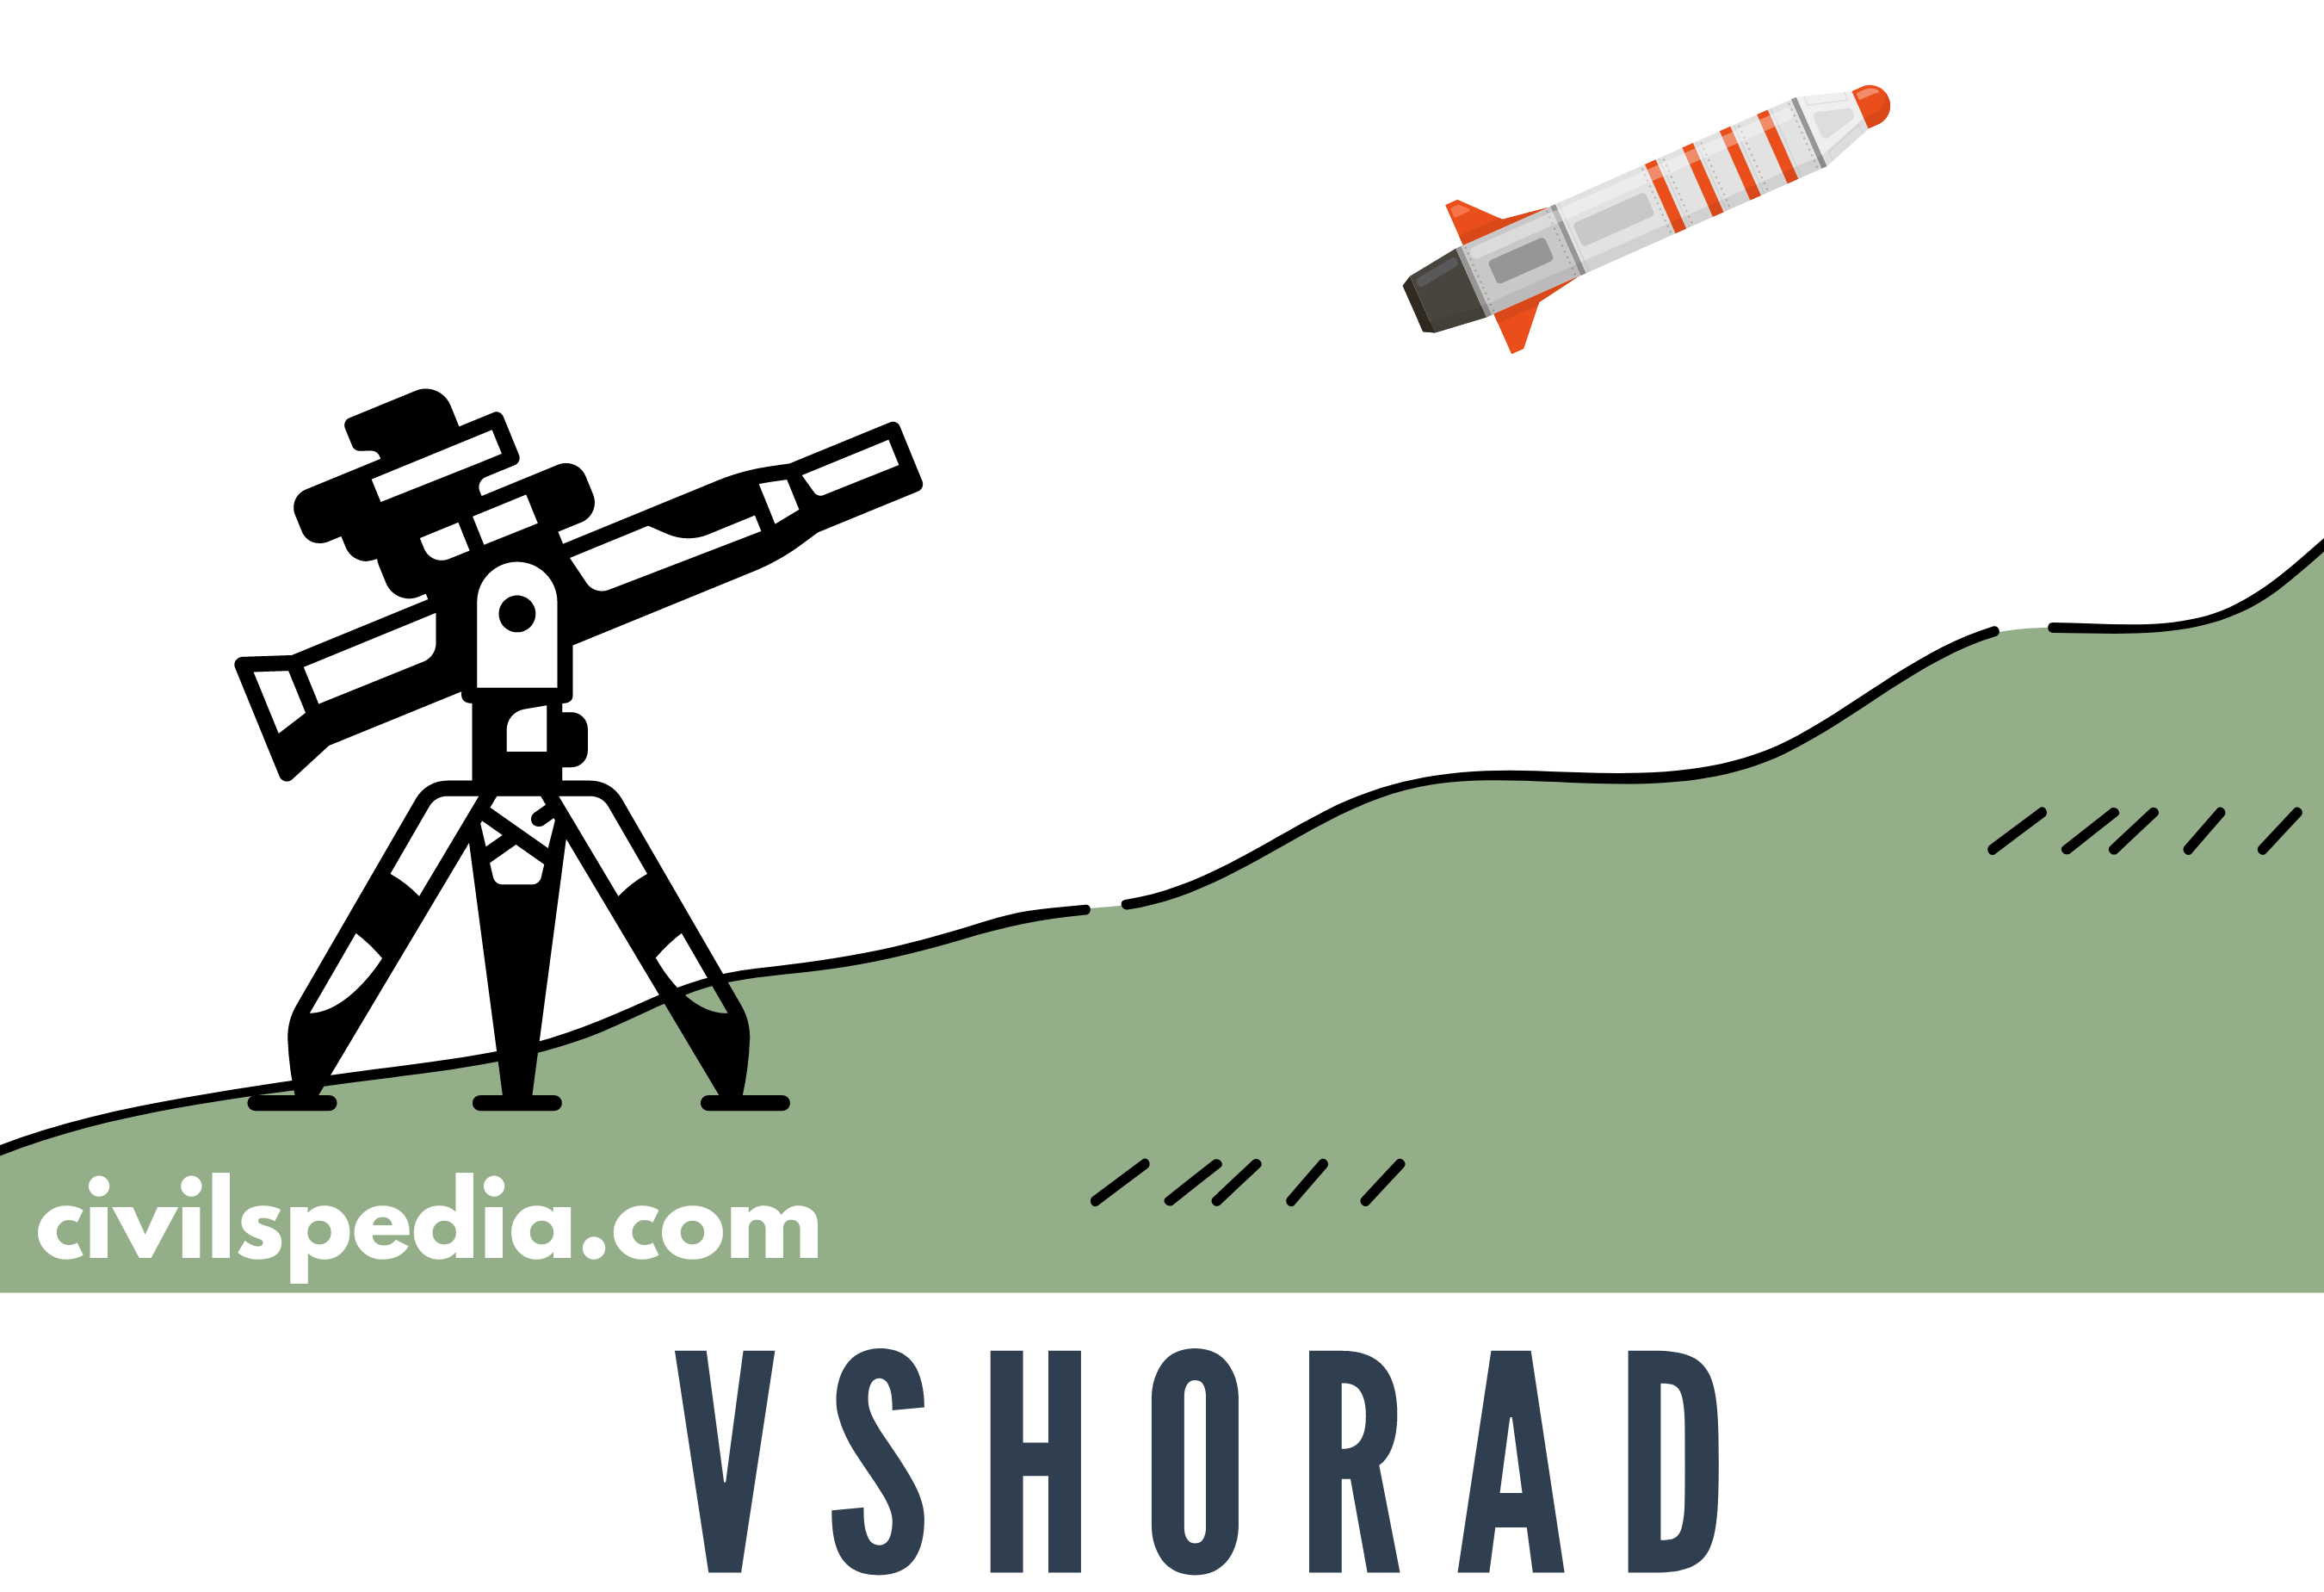 VSHORAD Missile System